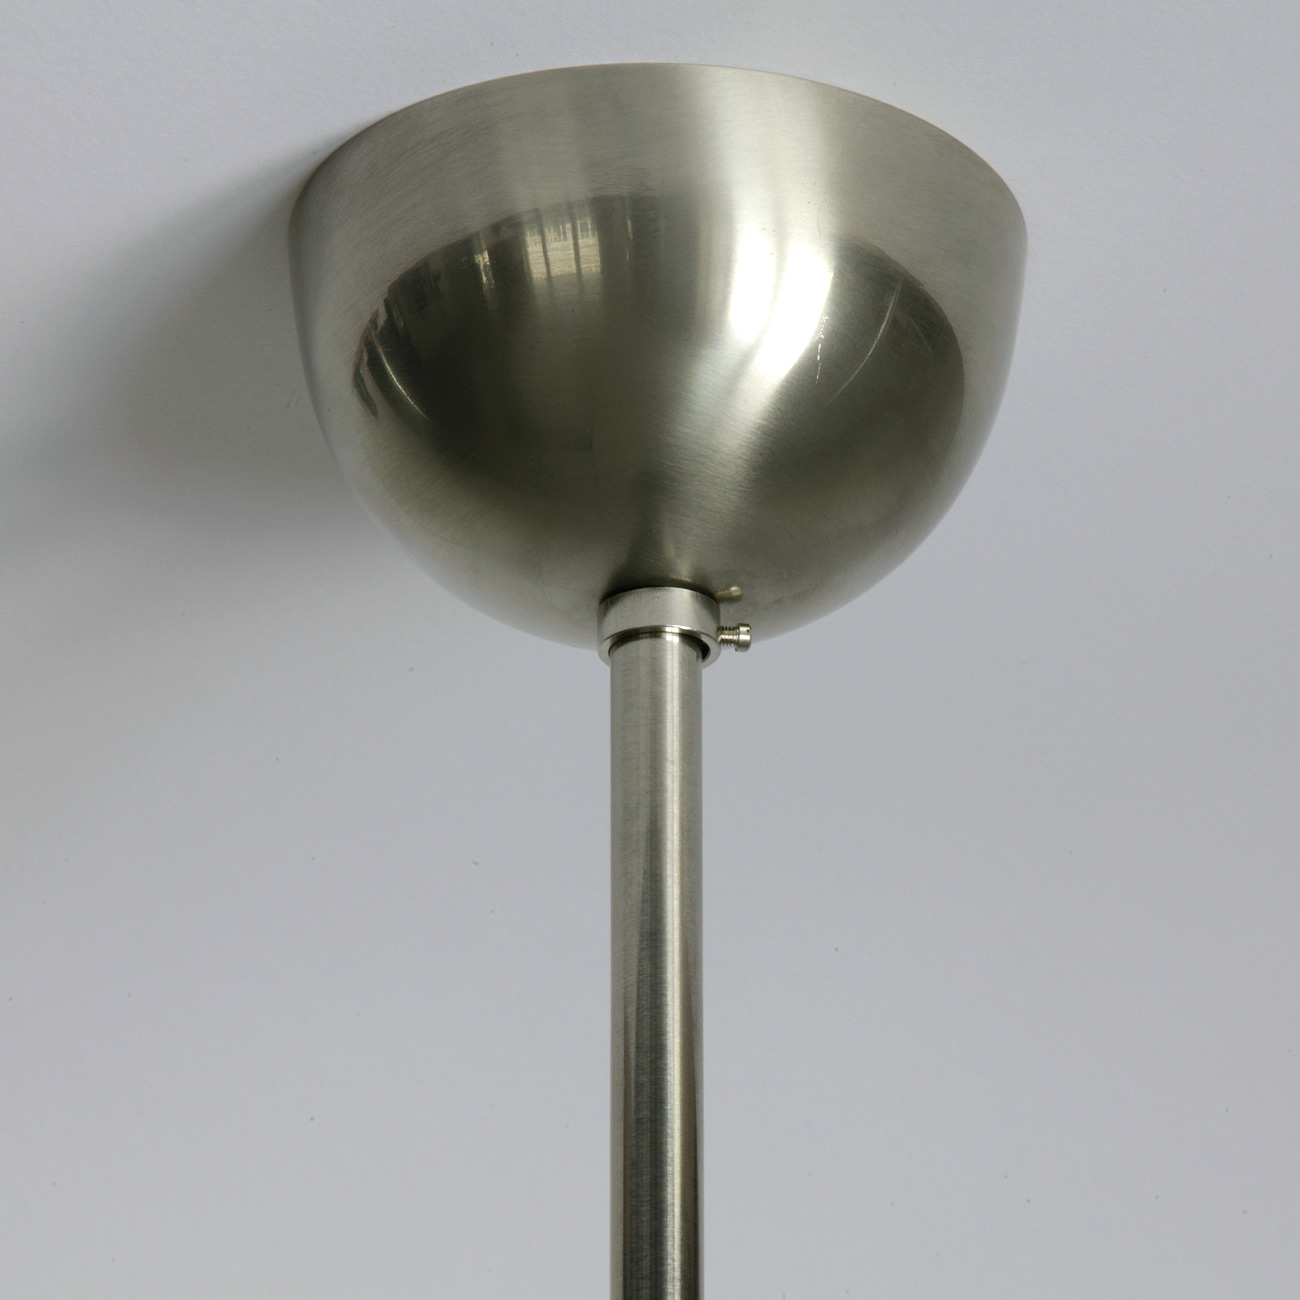 Bauhaus-Rohrleuchte mit Opal-Zylinderglas: Baldachin in der Messing-Oberfläche „matt vernickelt“